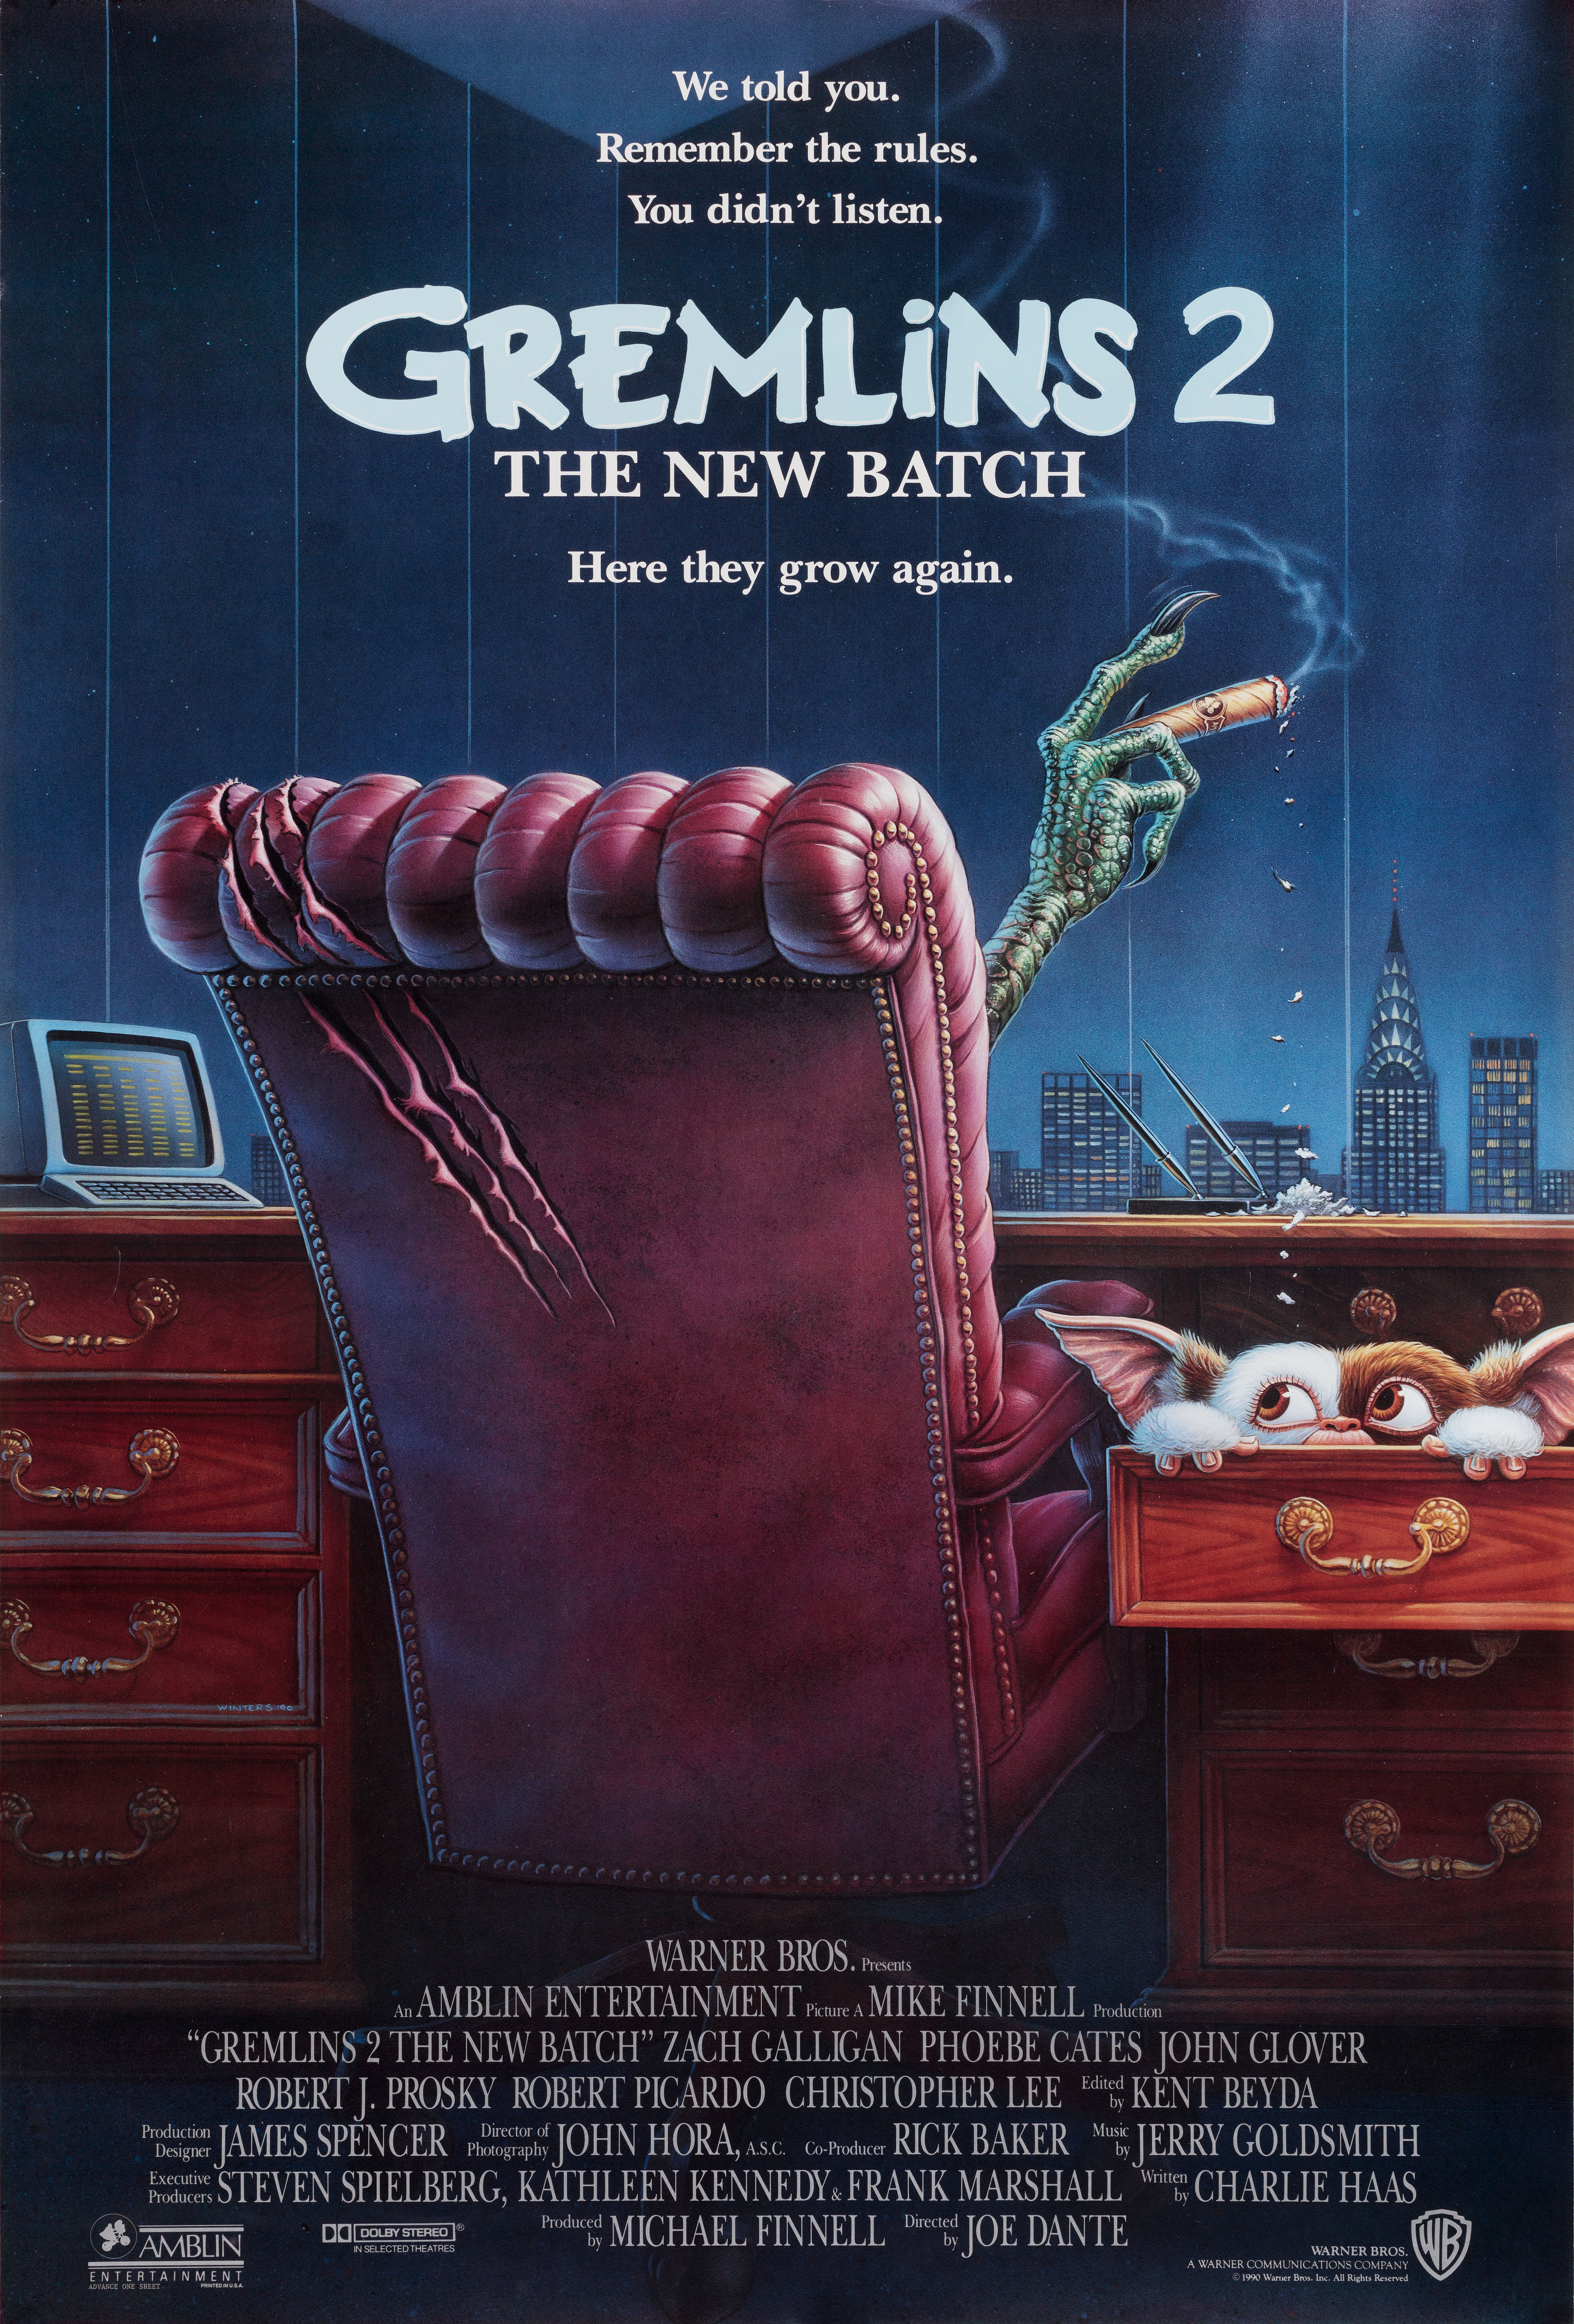 Гремлины 2: Новенькая партия (Gremlins 2 The New Batch, 1990), режиссёр Джо Данте, американский постер к фильму (ужасы, 1990 год)